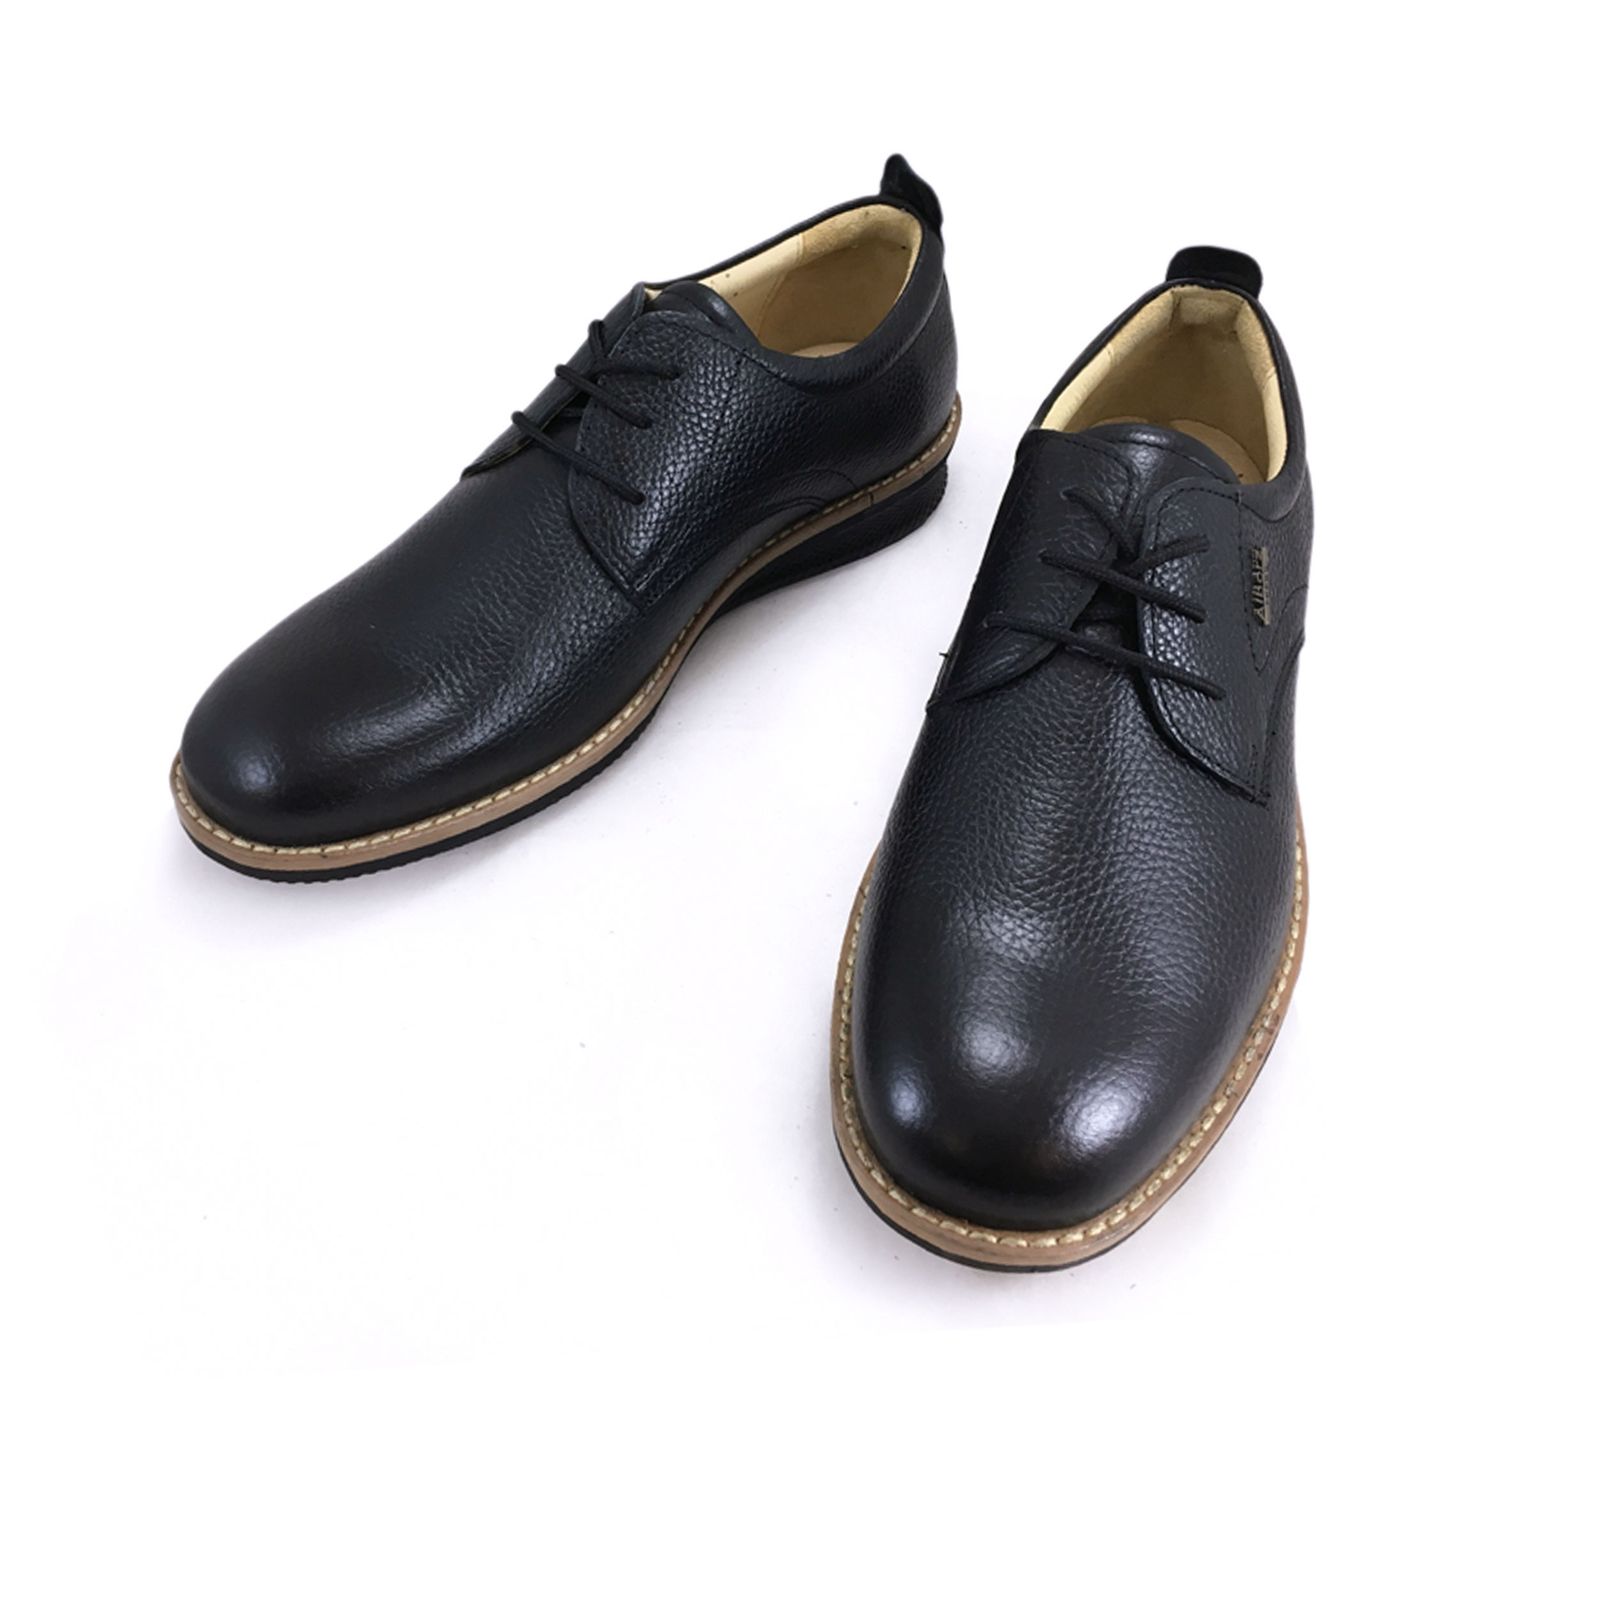 کفش روزمره مردانه شرکت کفش البرز مدل HMN کد 2924-3 -  - 11